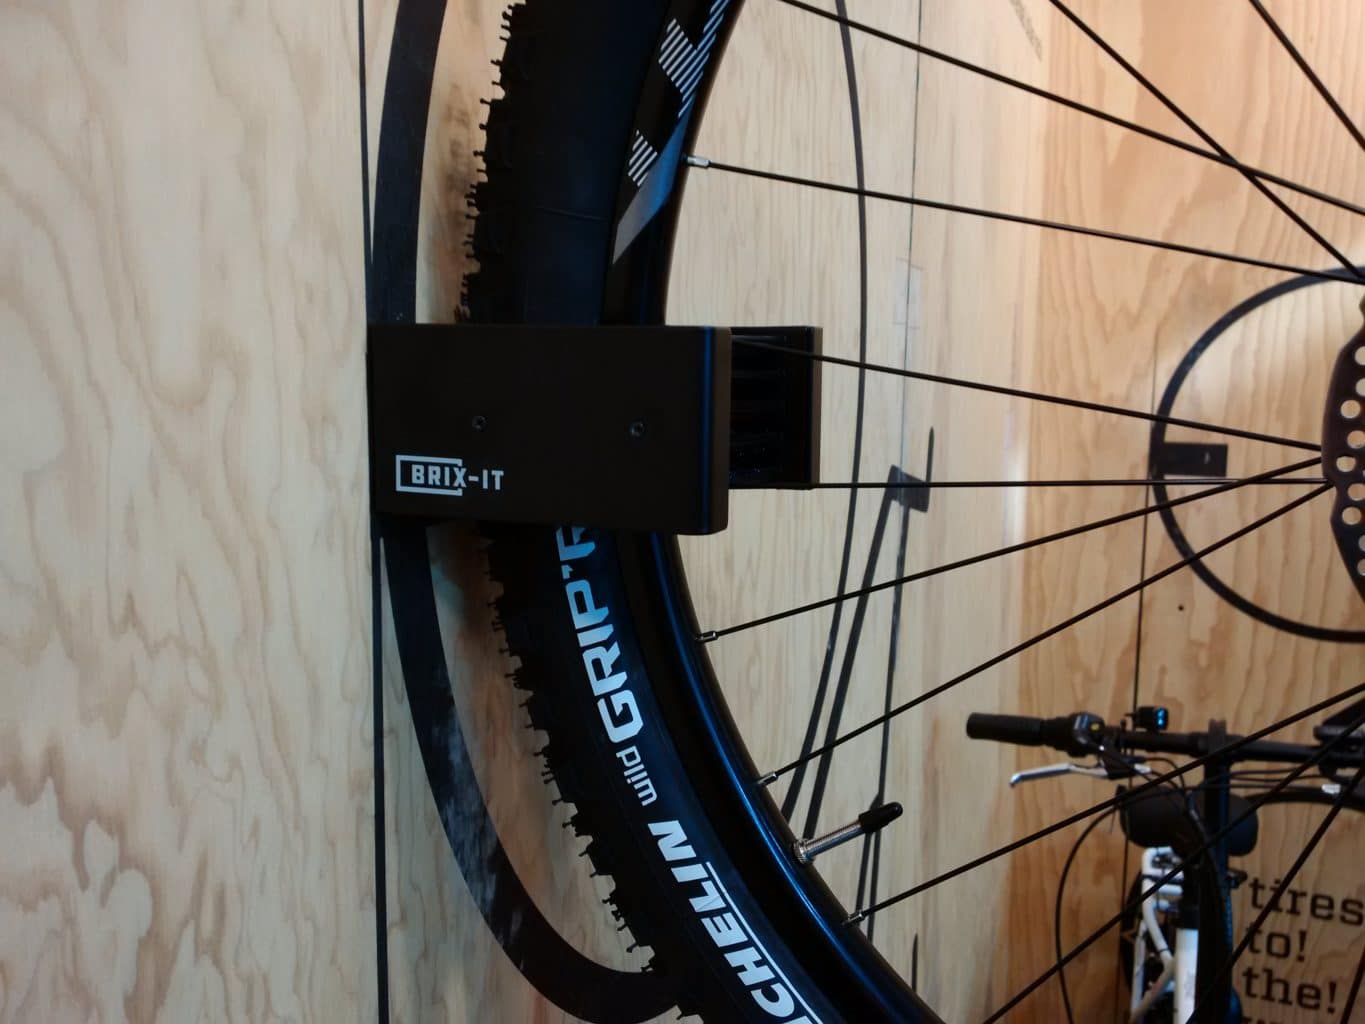 [Paket] Brix-IT Set mit Fahrradschloss und Fahrradhalterung für E Bike oder  Fahrrad Halterung mit Kabelschloss Brix IT Brix-LOG und FIX